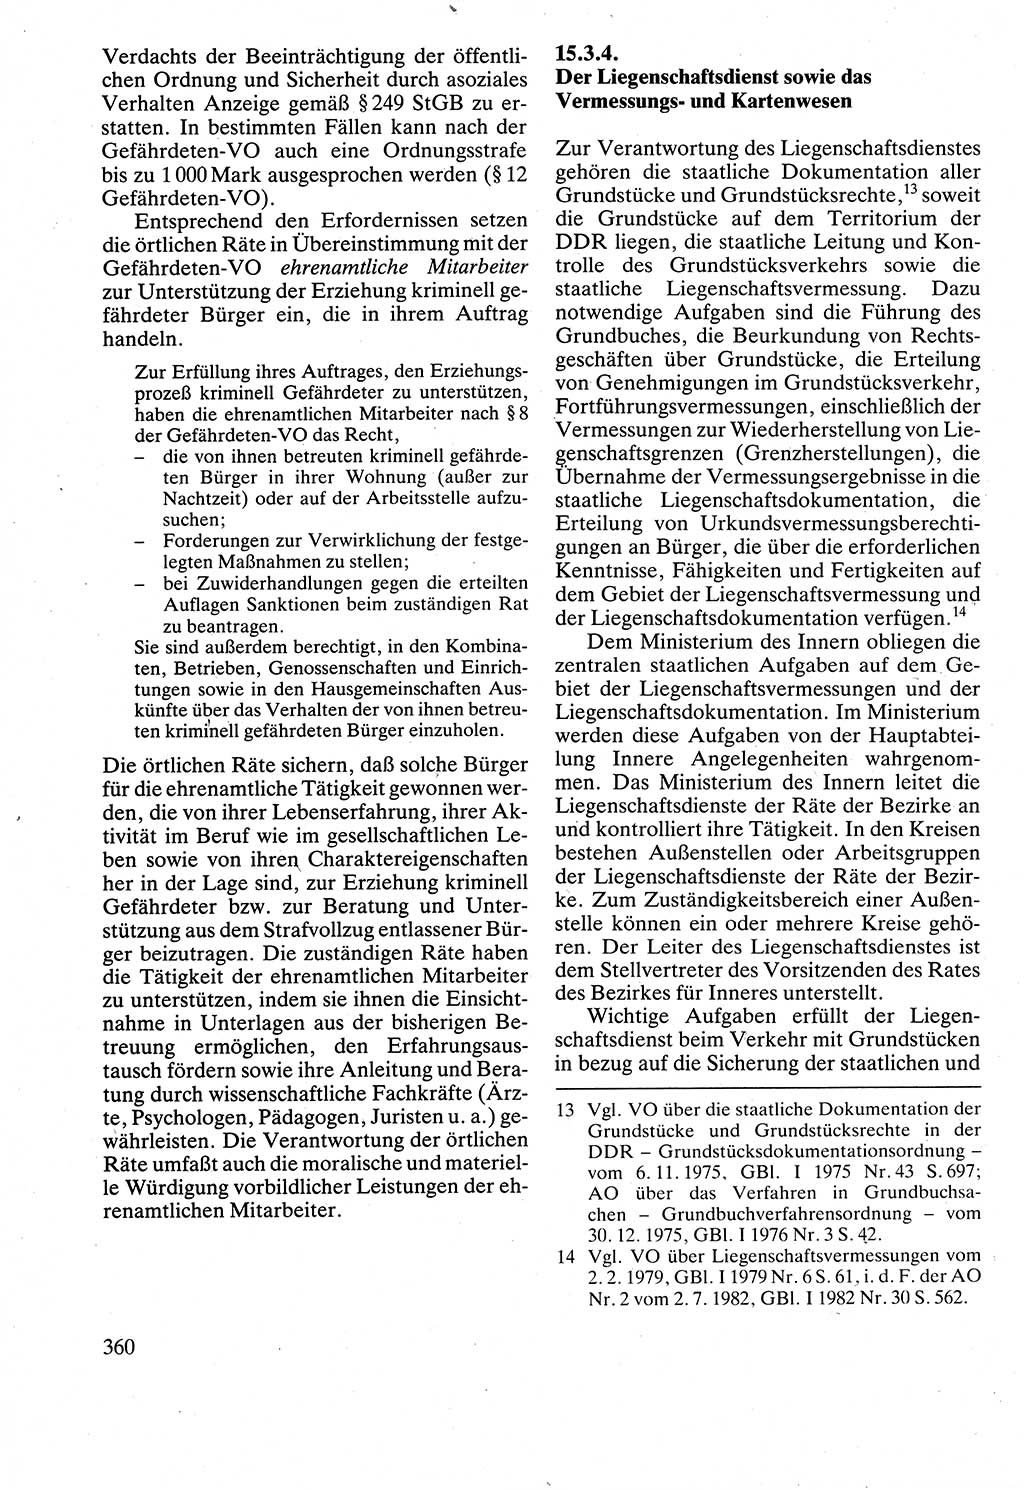 Verwaltungsrecht [Deutsche Demokratische Republik (DDR)], Lehrbuch 1988, Seite 360 (Verw.-R. DDR Lb. 1988, S. 360)